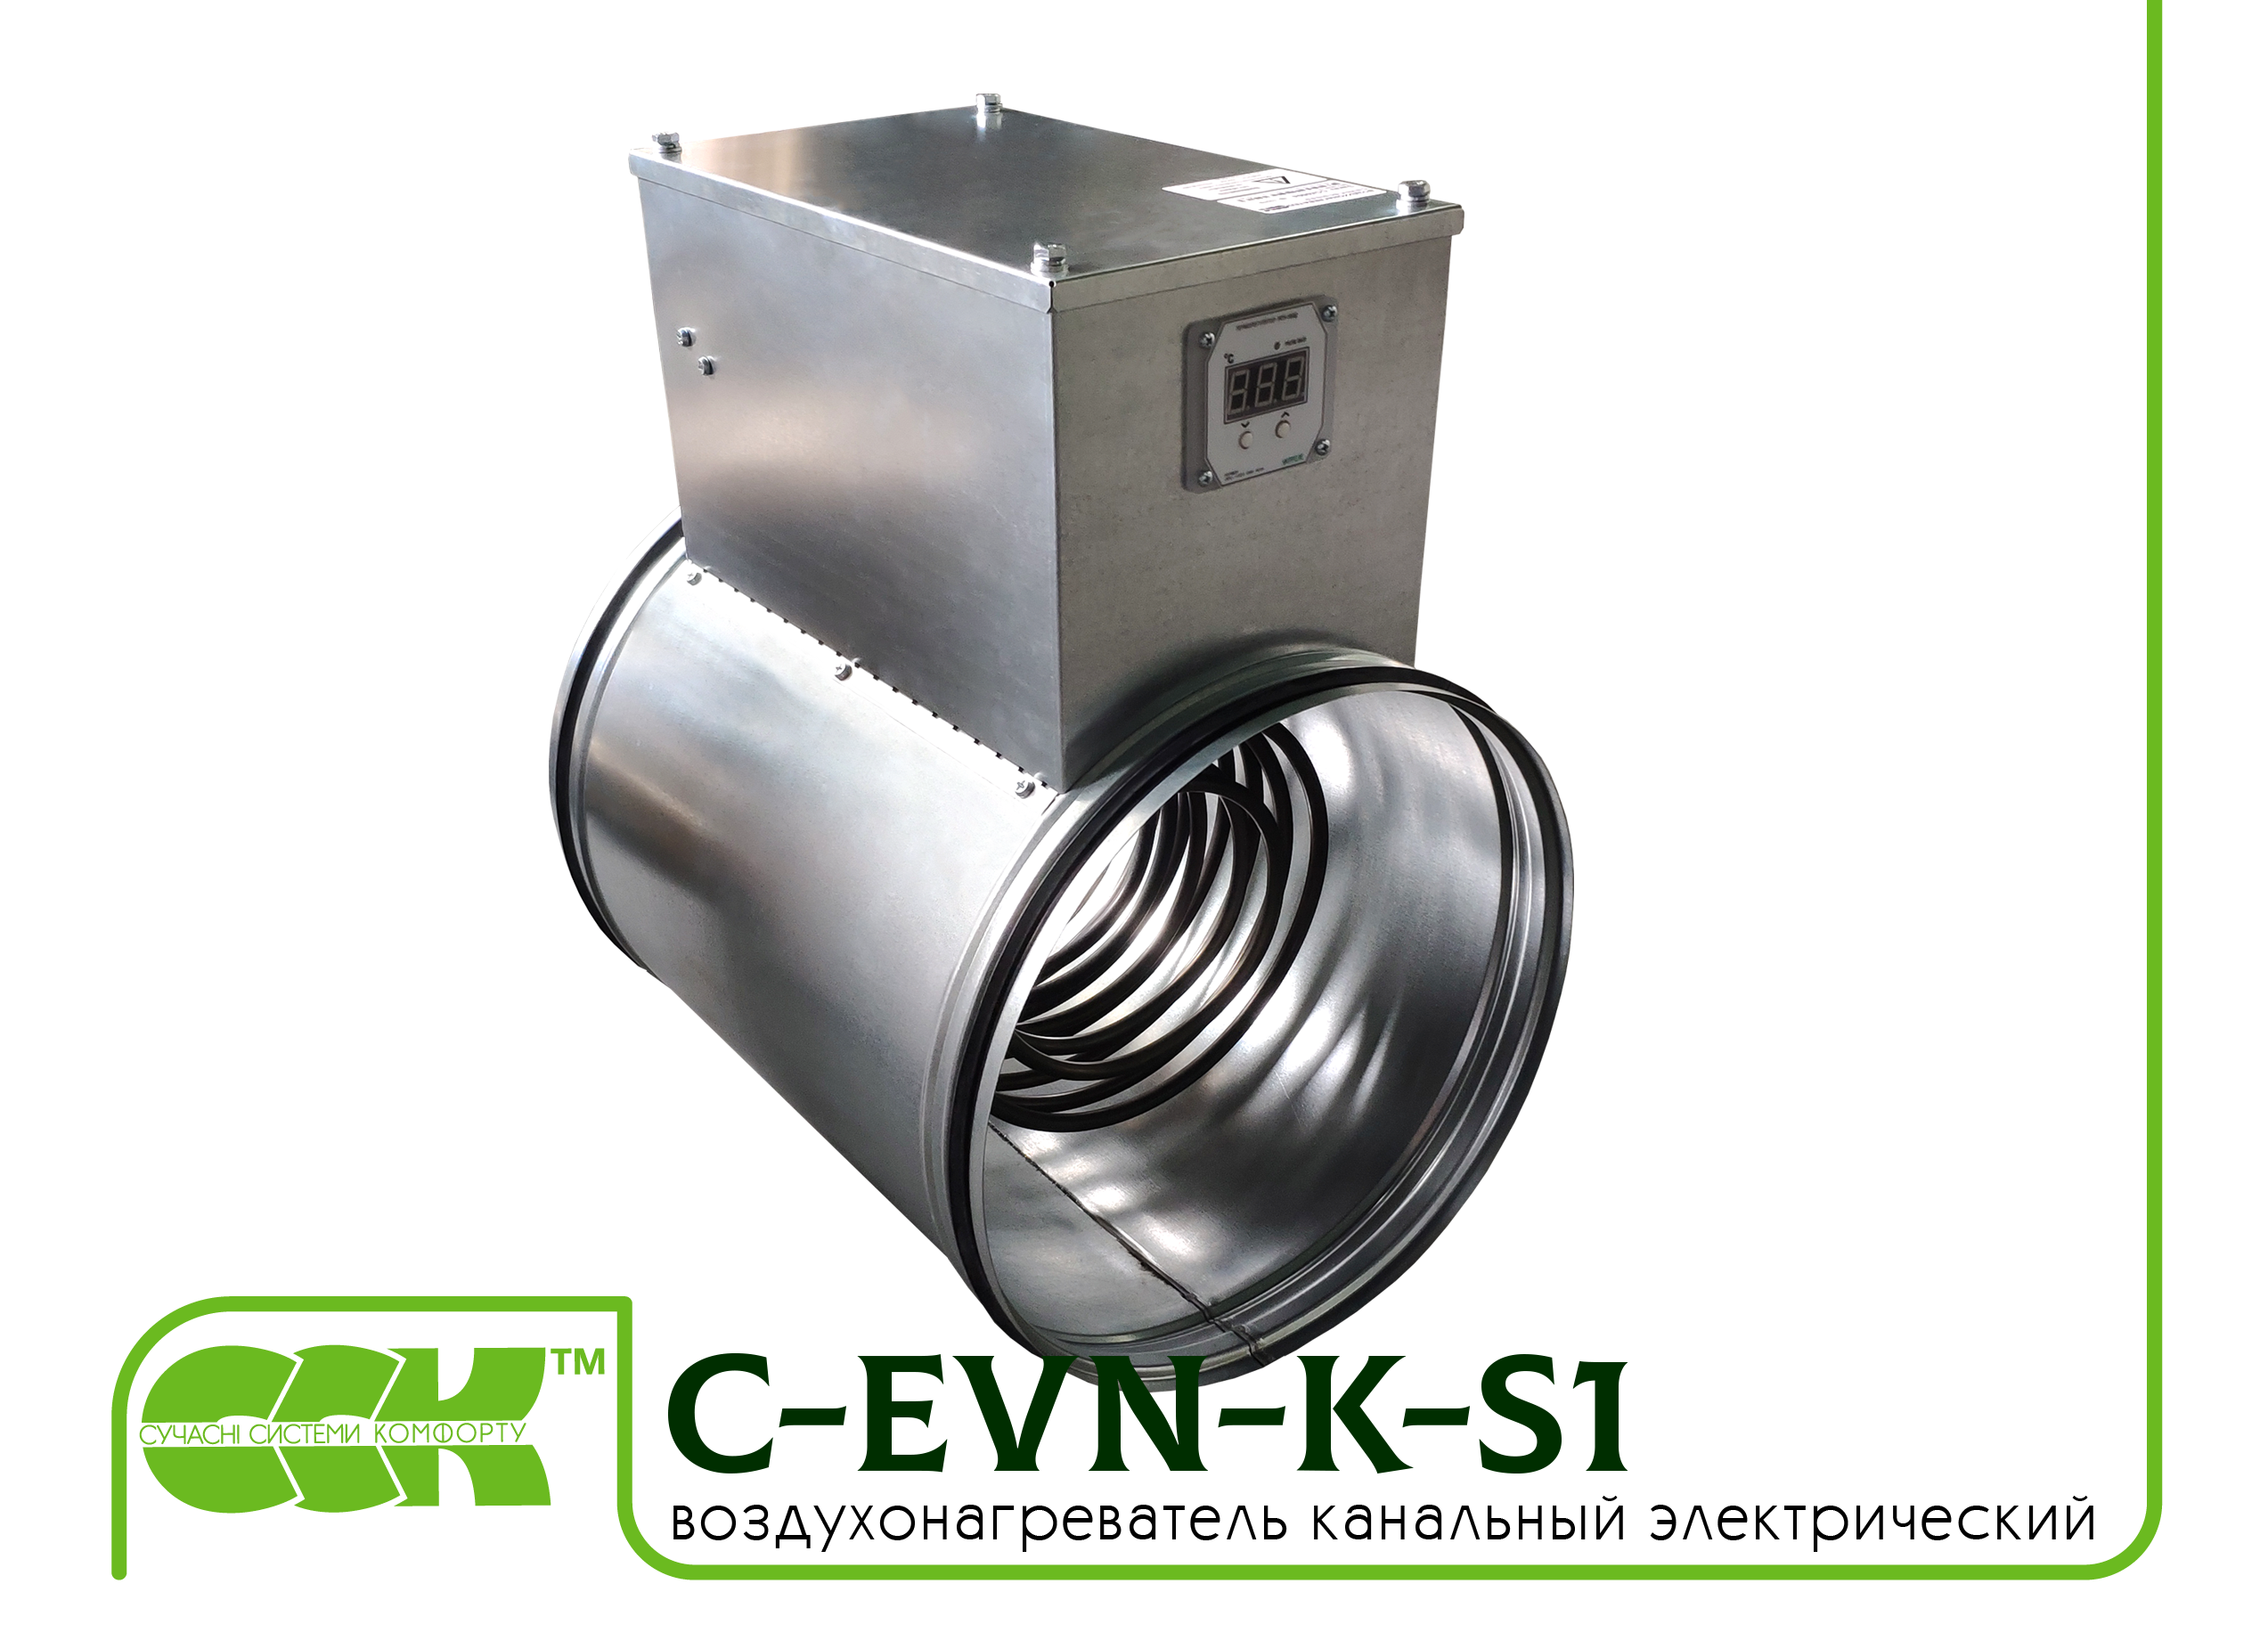 Воздухонагреватель канальный электрический для круглых каналов C-EVN-K-S1-315-6,0